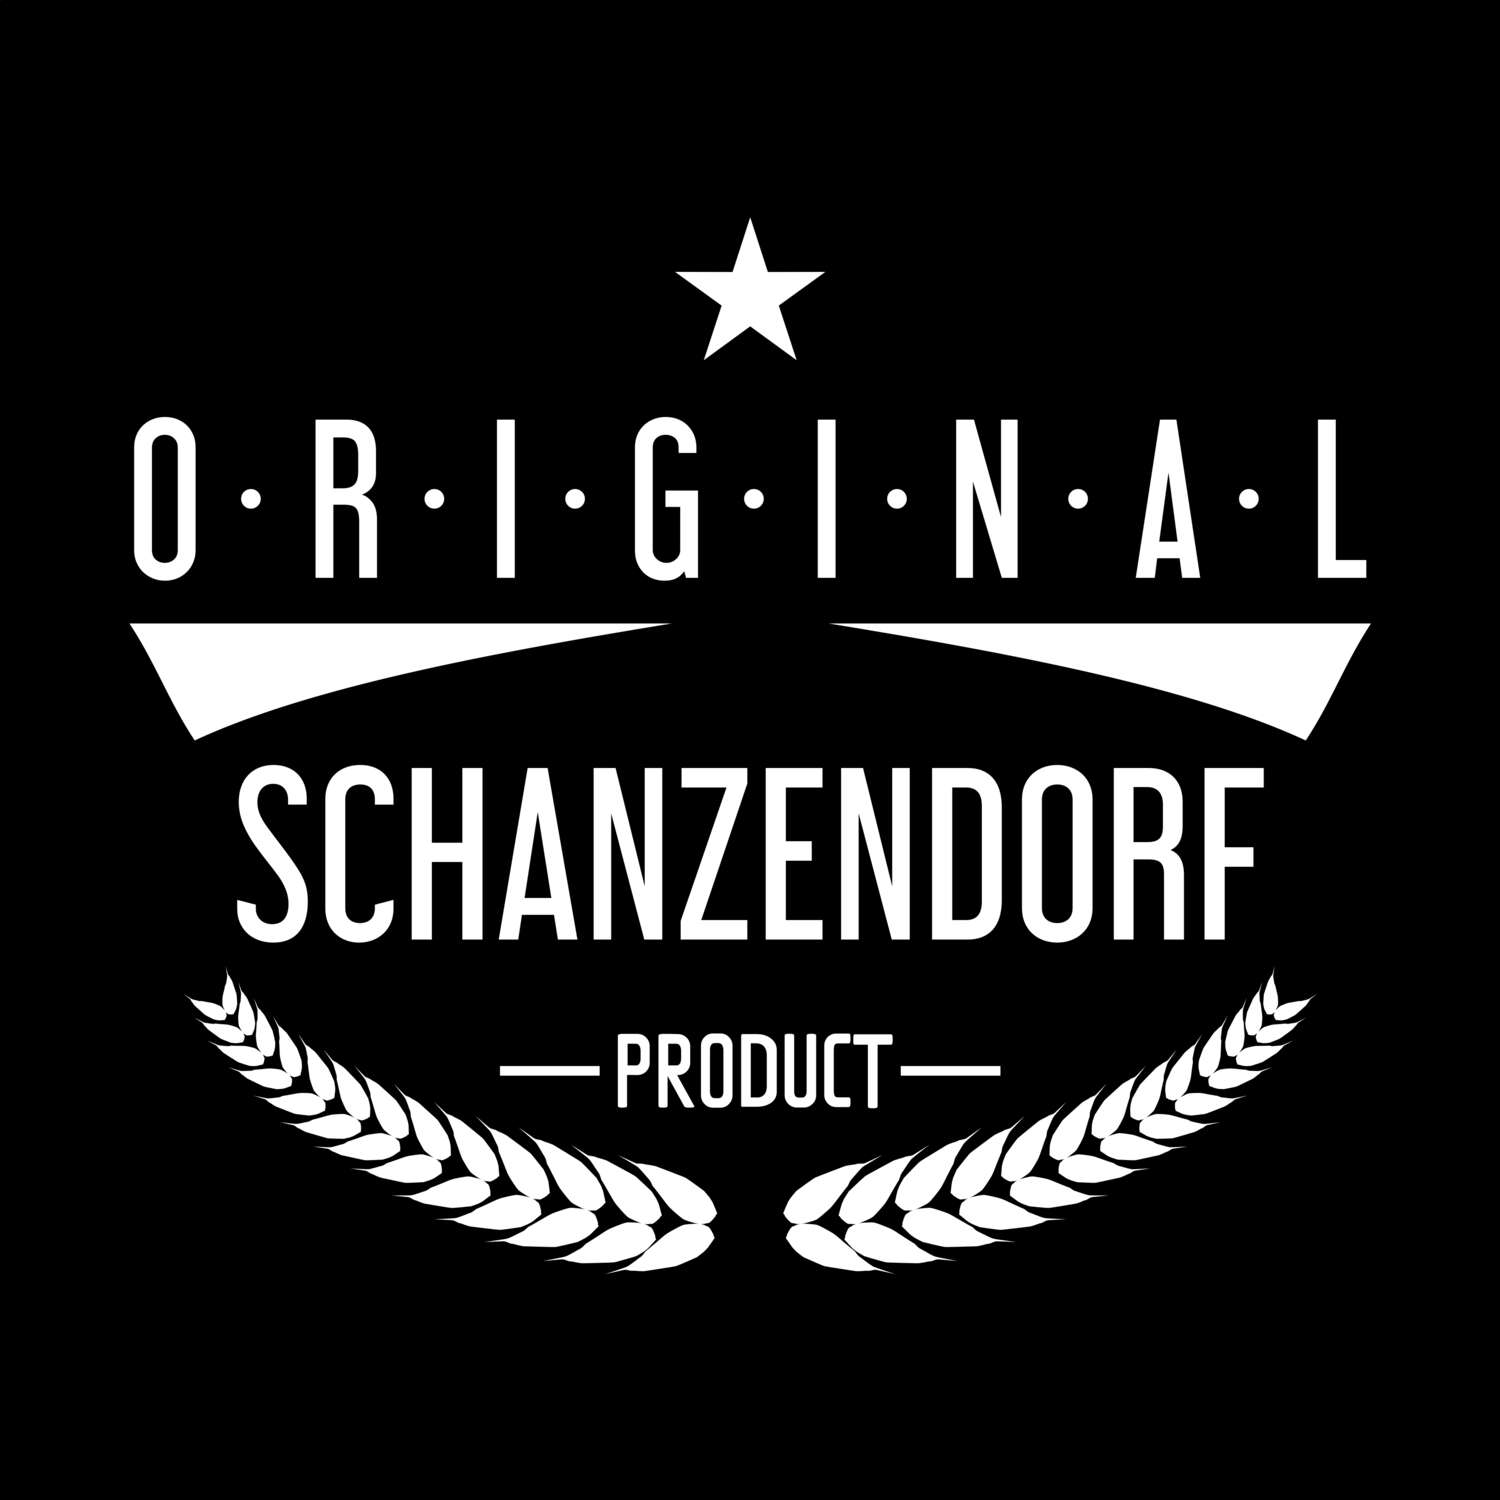 Schanzendorf T-Shirt »Original Product«